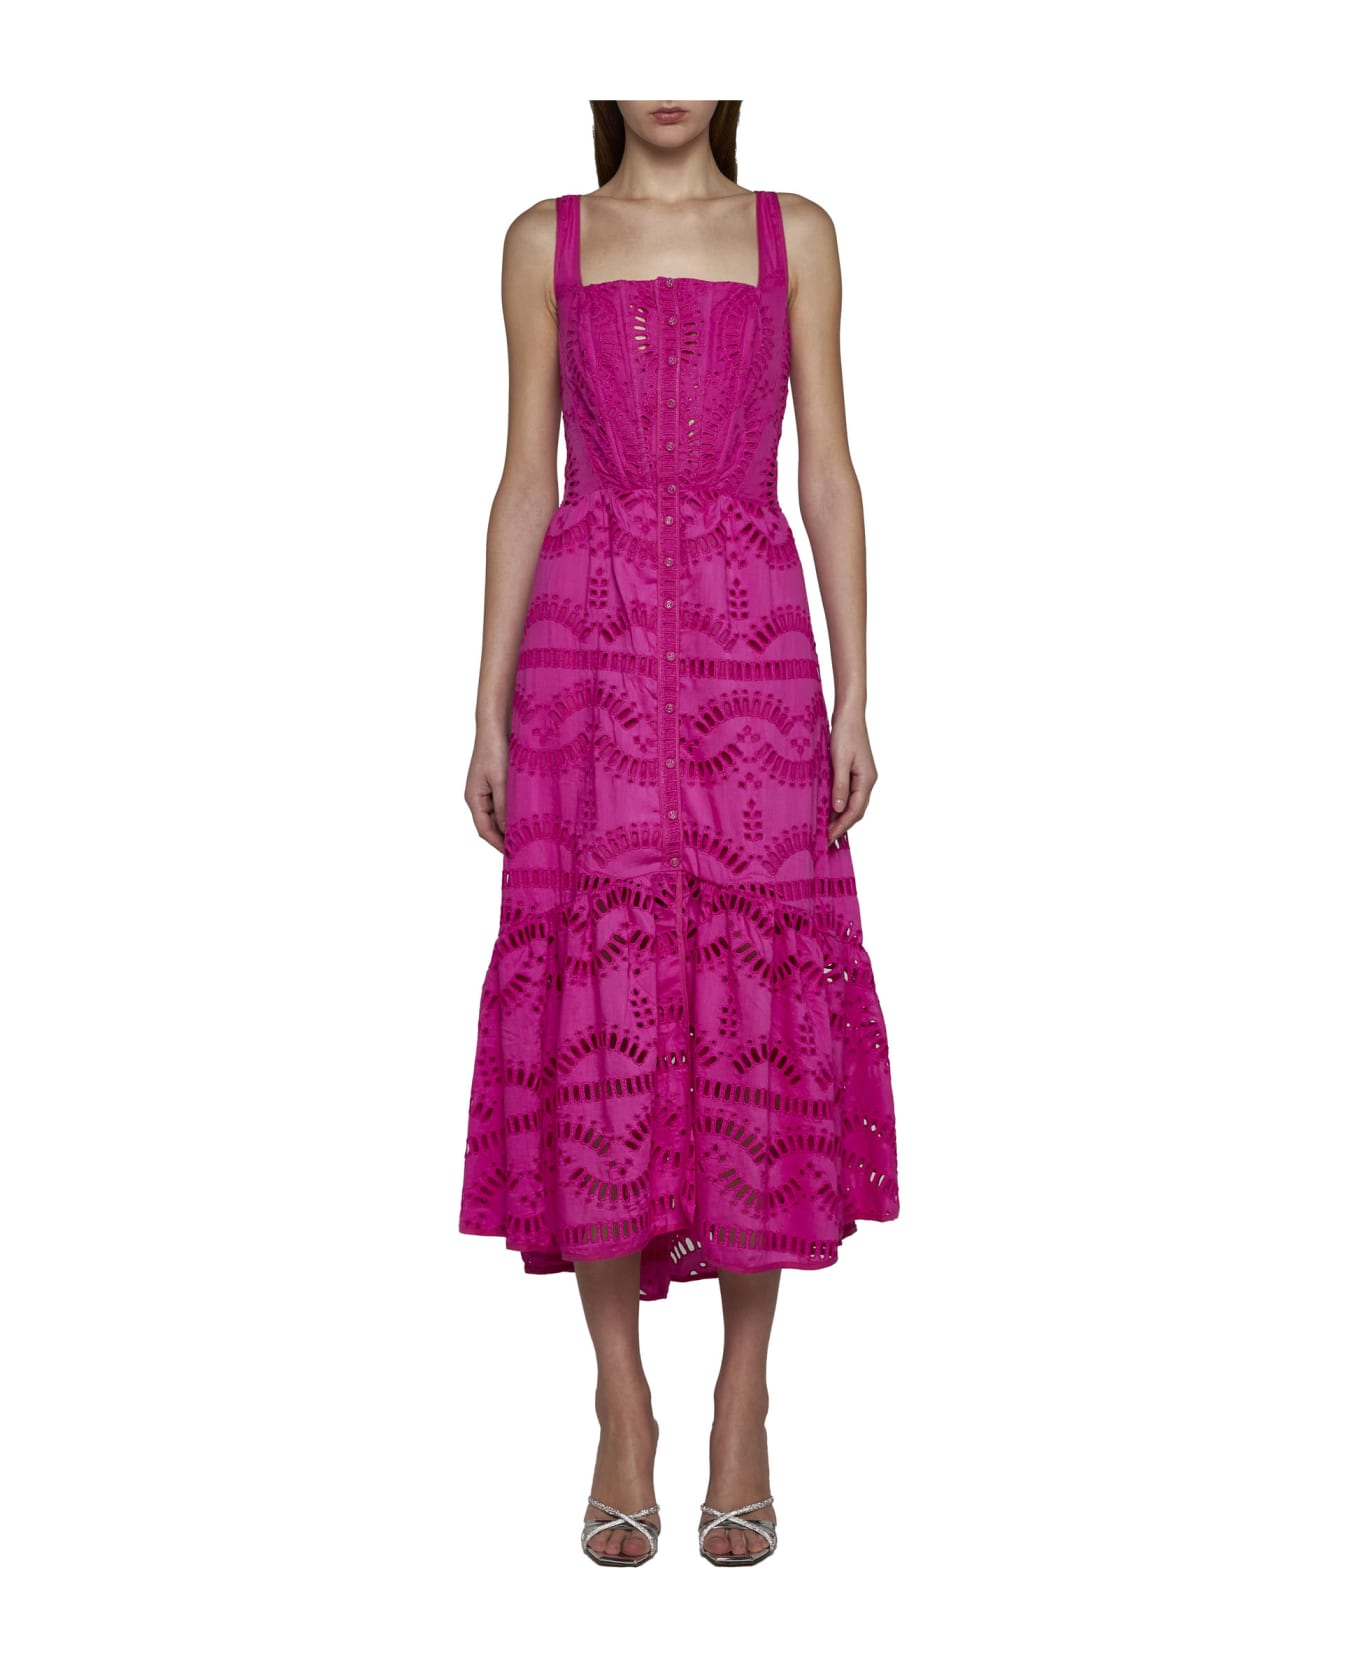 Charo Ruiz Dress - Hot pink